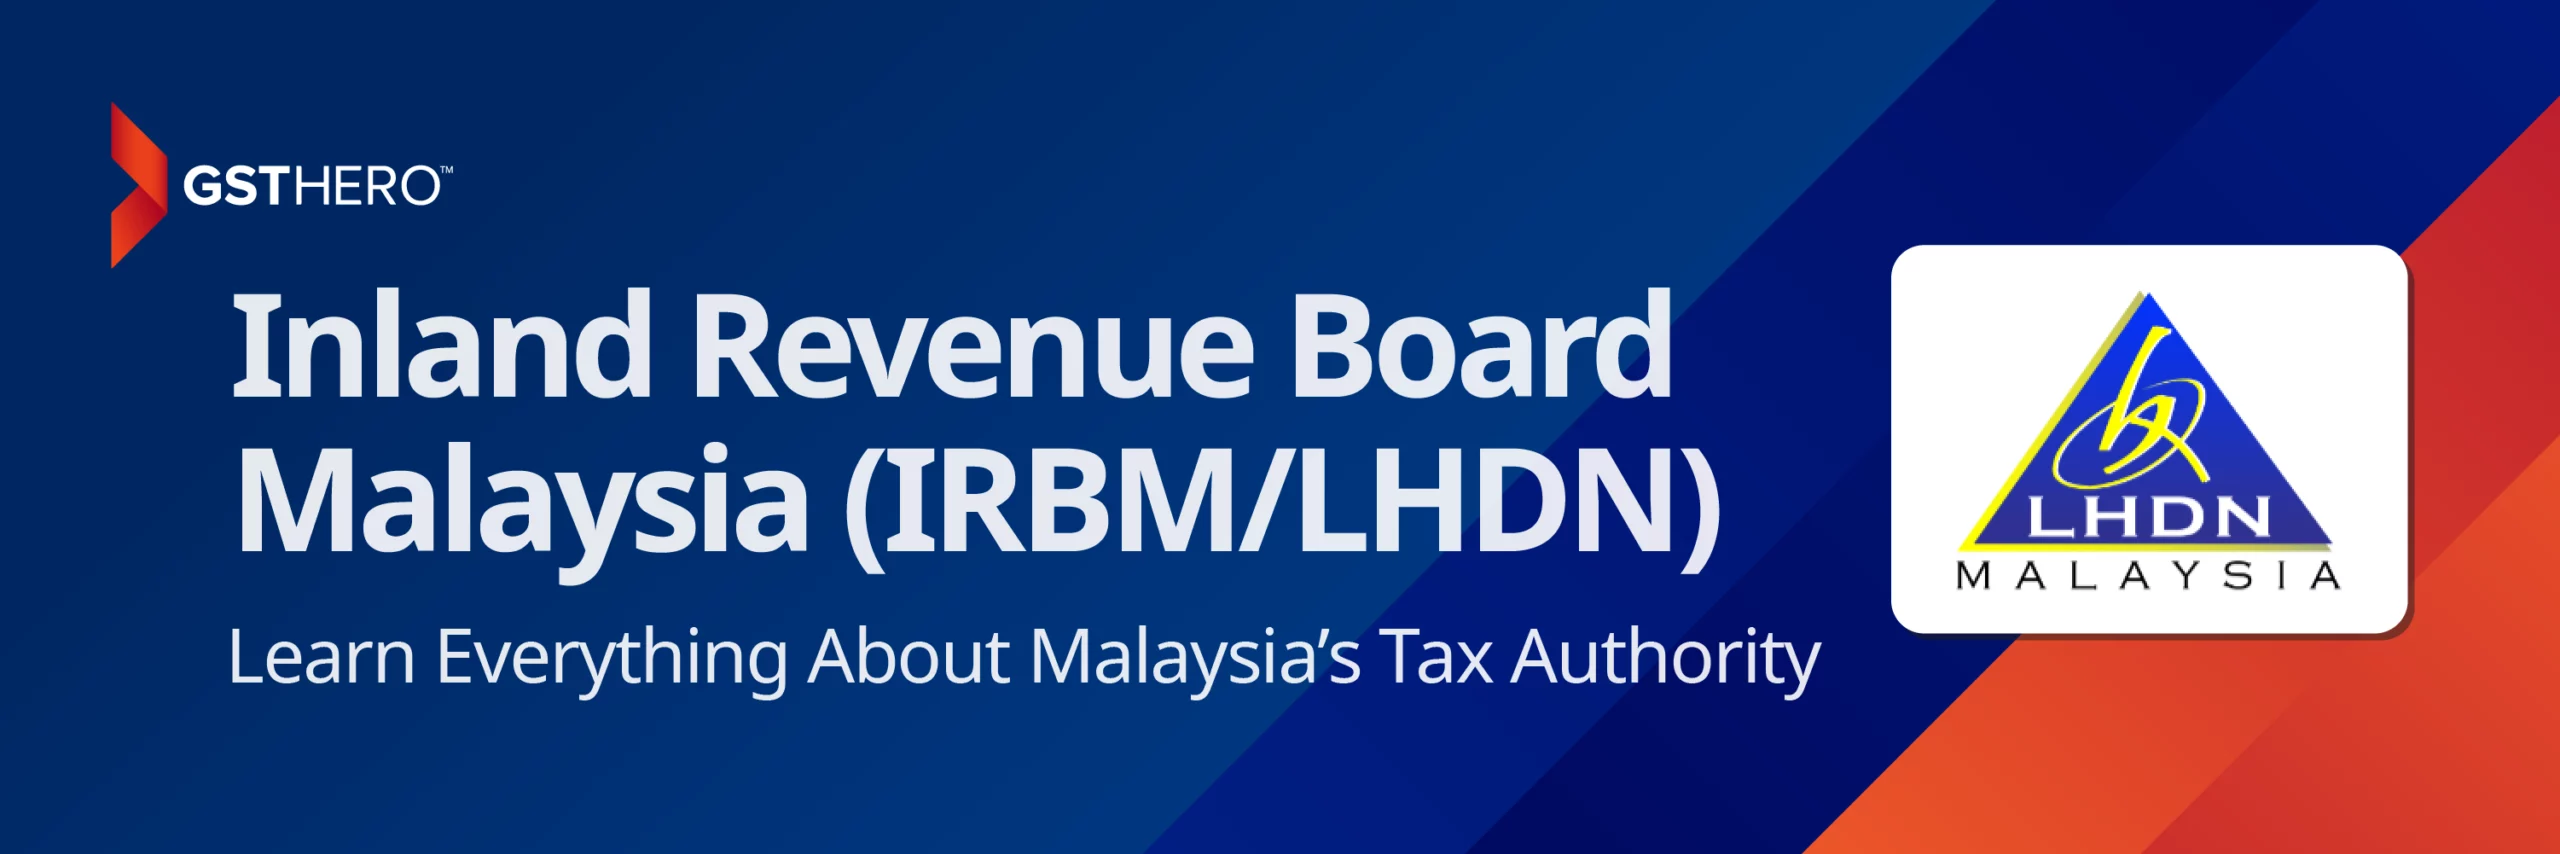 Inland Revenue Board of Malaysia